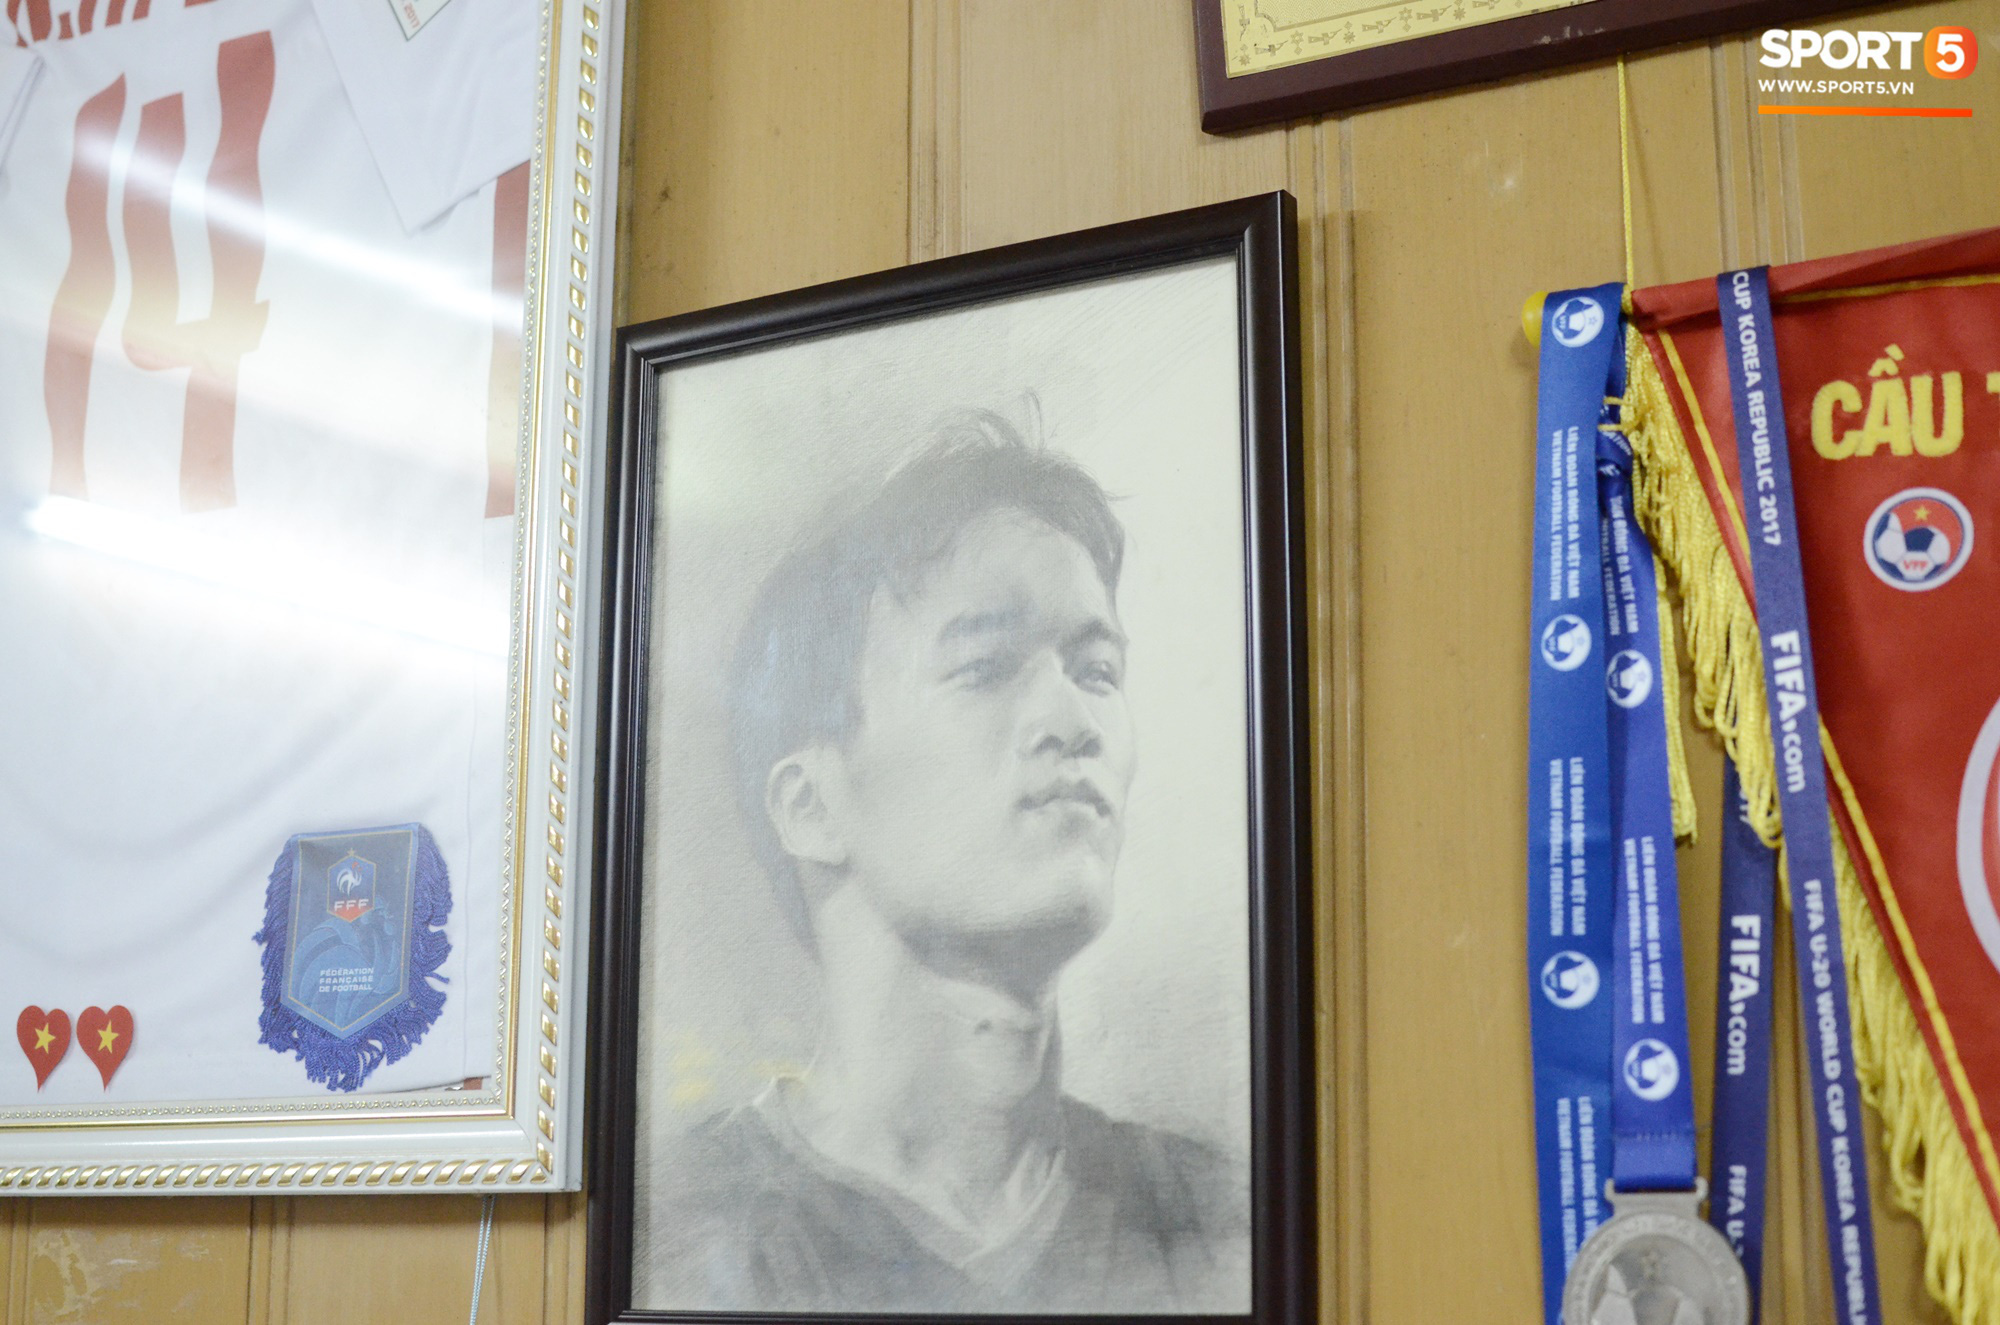 Về thăm nhà người hùng U22 Việt Nam, Nguyễn Hoàng Đức: Tràn ngập kỷ vật World Cup và những bức ảnh thời trẻ trâu hết sức dễ thương - Ảnh 15.